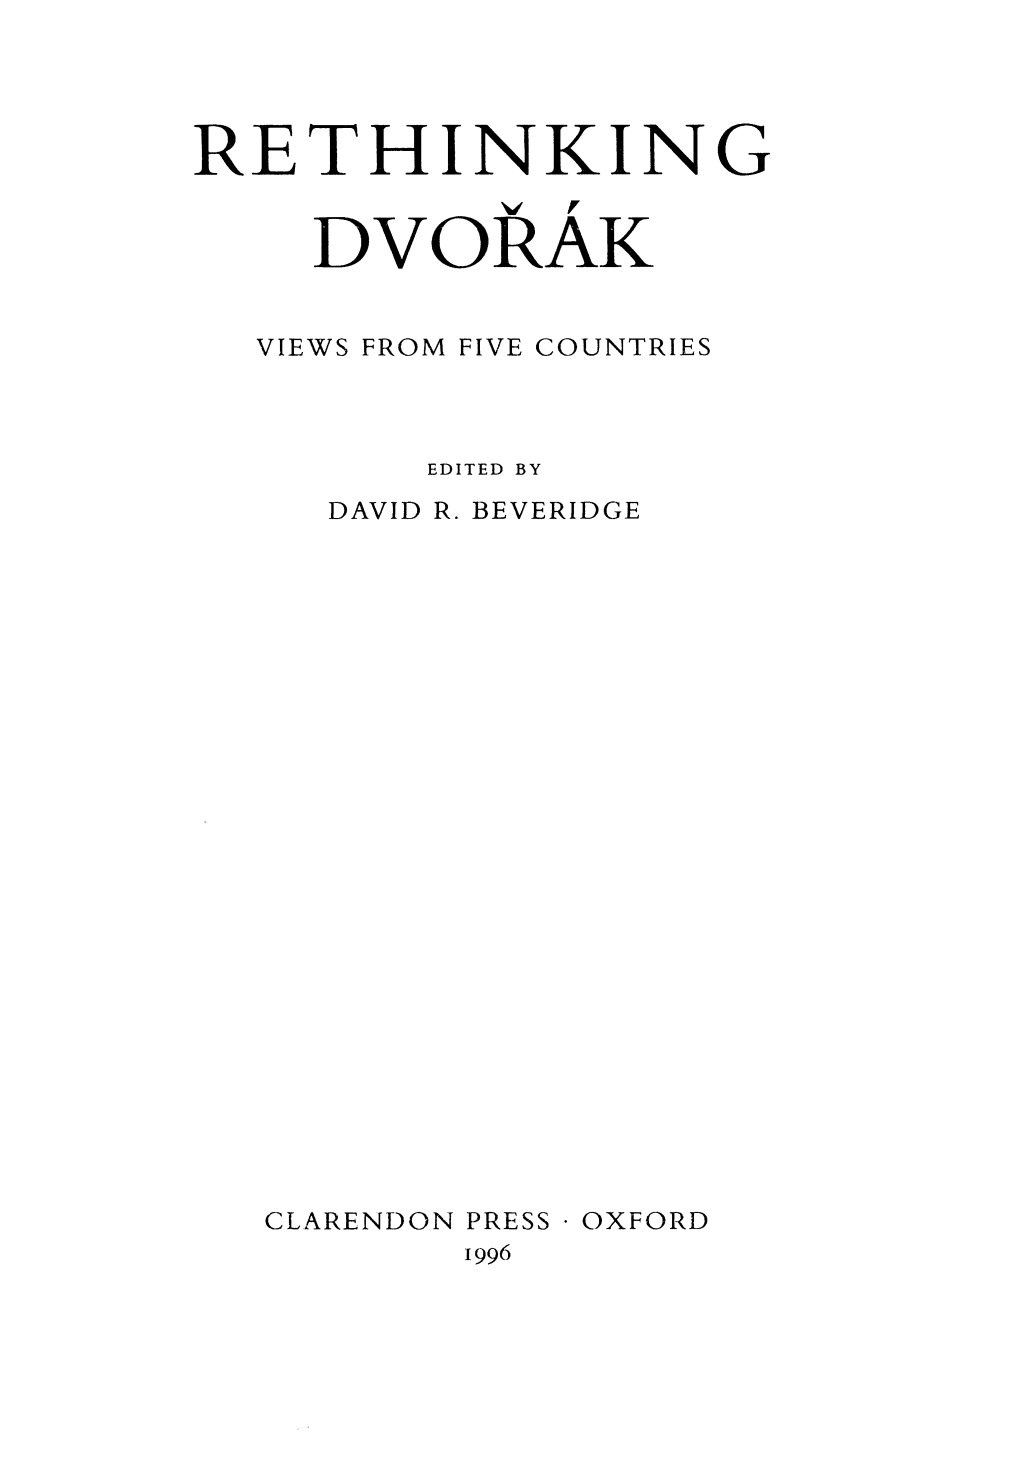 Dvořák's Eighth Symphony: a Response to Tchaikovsky?